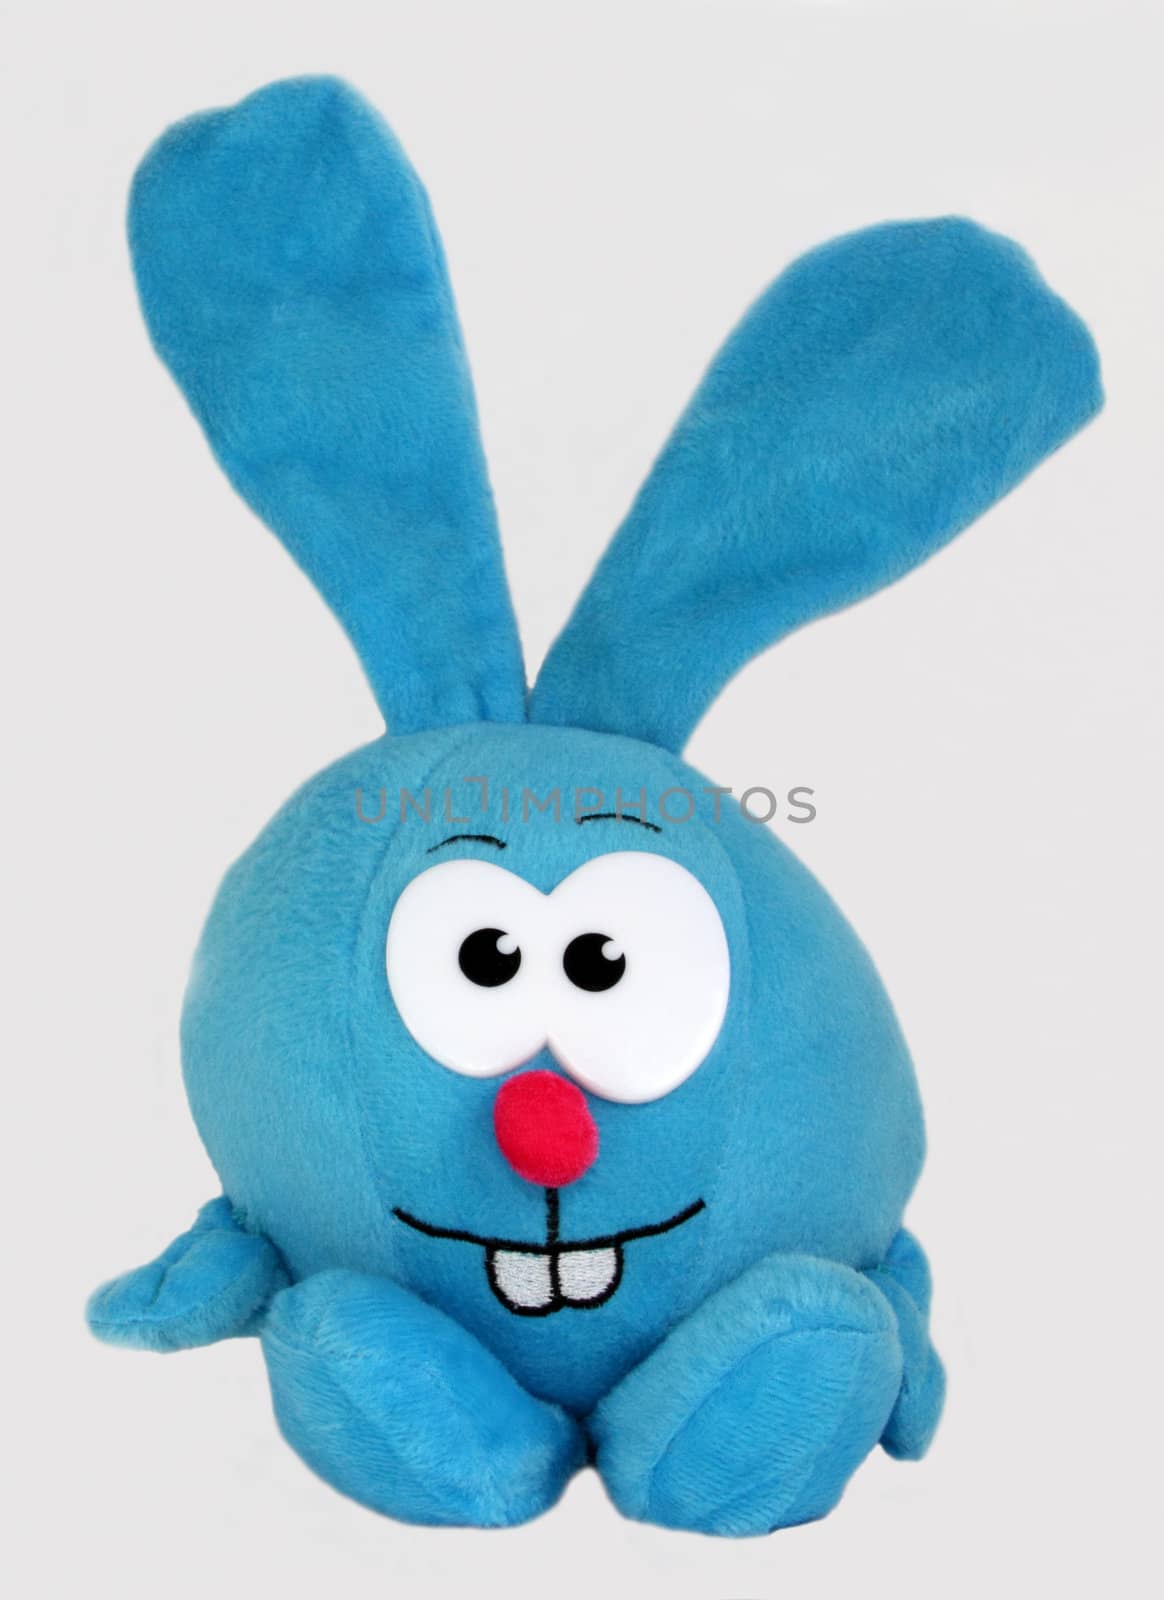 Soft children's toy - rabbit